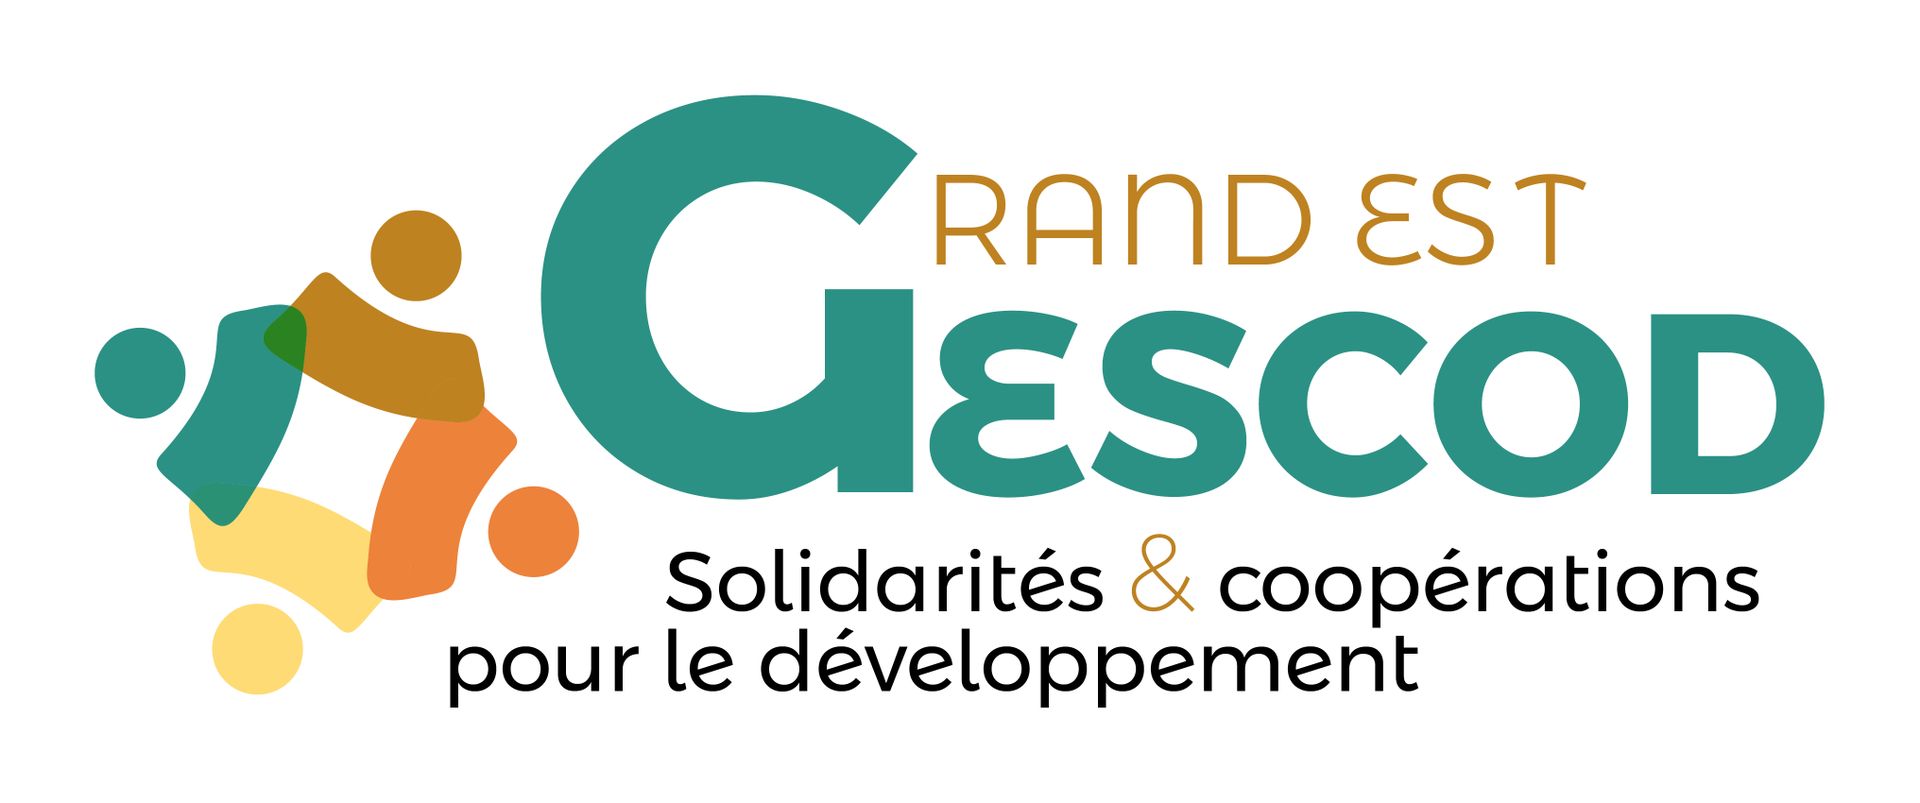 GESCOD - Concevoir un projet d’accès à l’eau potable et à l’assainissement